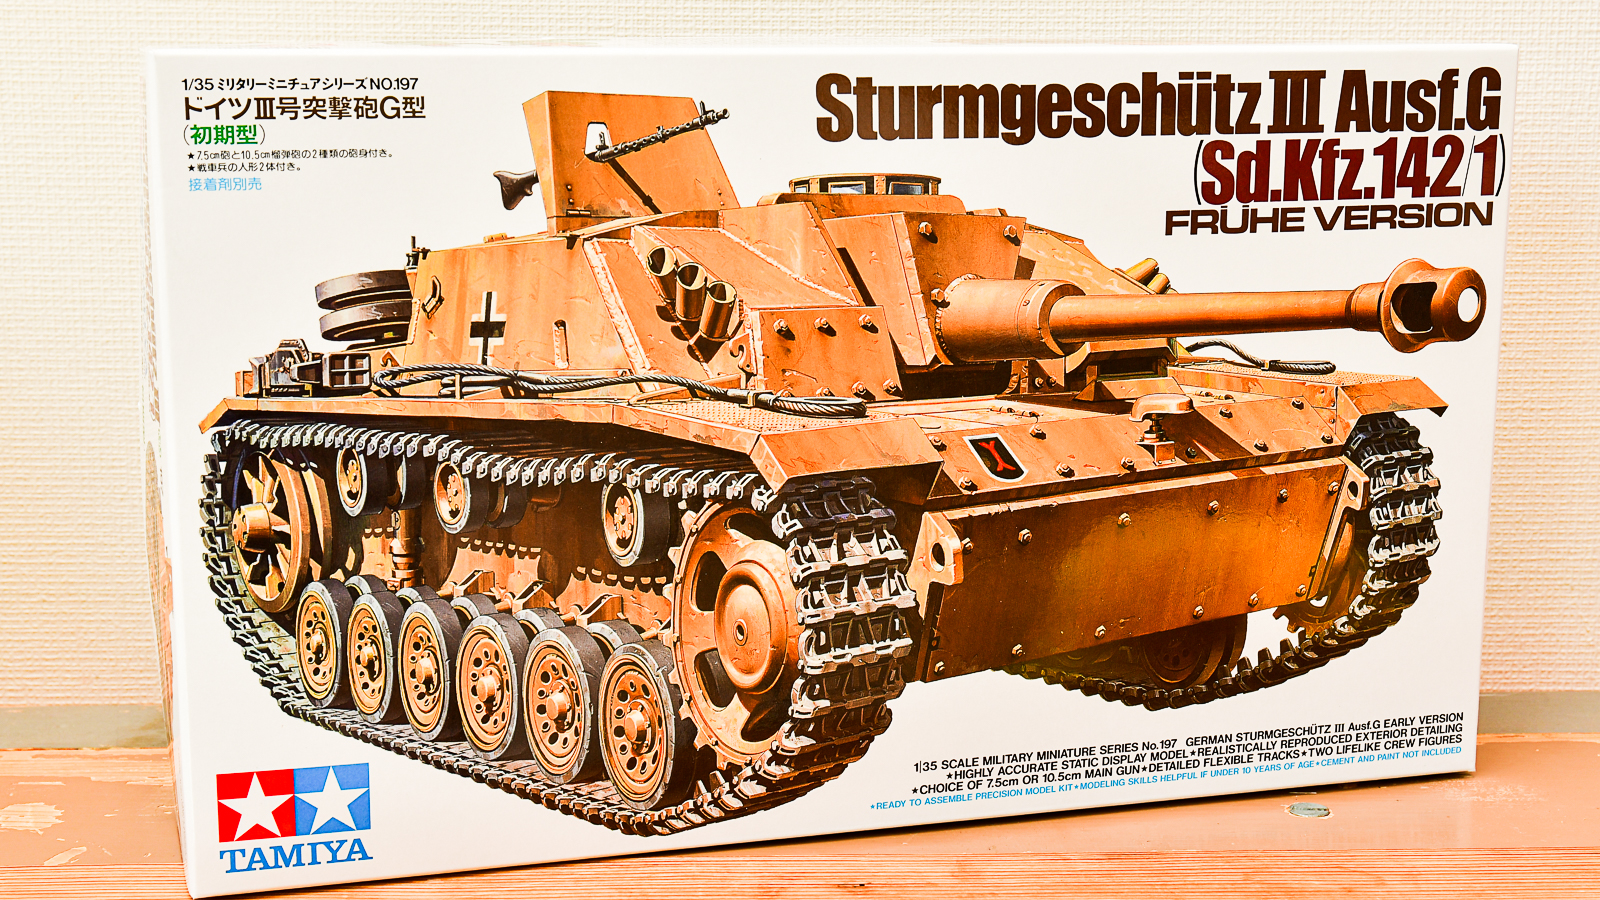 模型自身／箱絵にいない「笑顔のプラモ」が僕の初めての戦車模型 